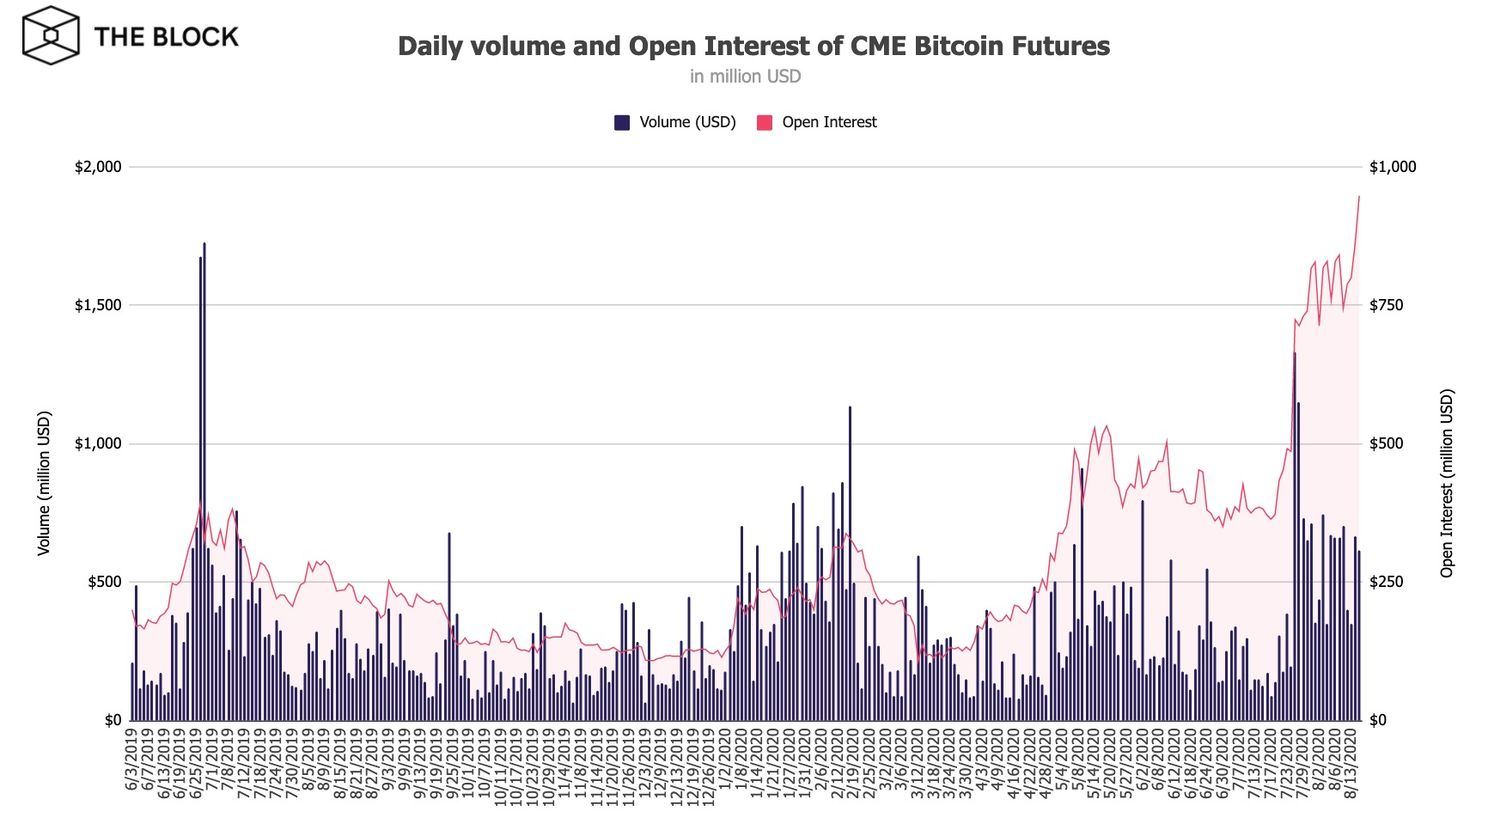 Bitcoin (BTC) futures populair: bijna $1 miljard staat bij CME beurs open